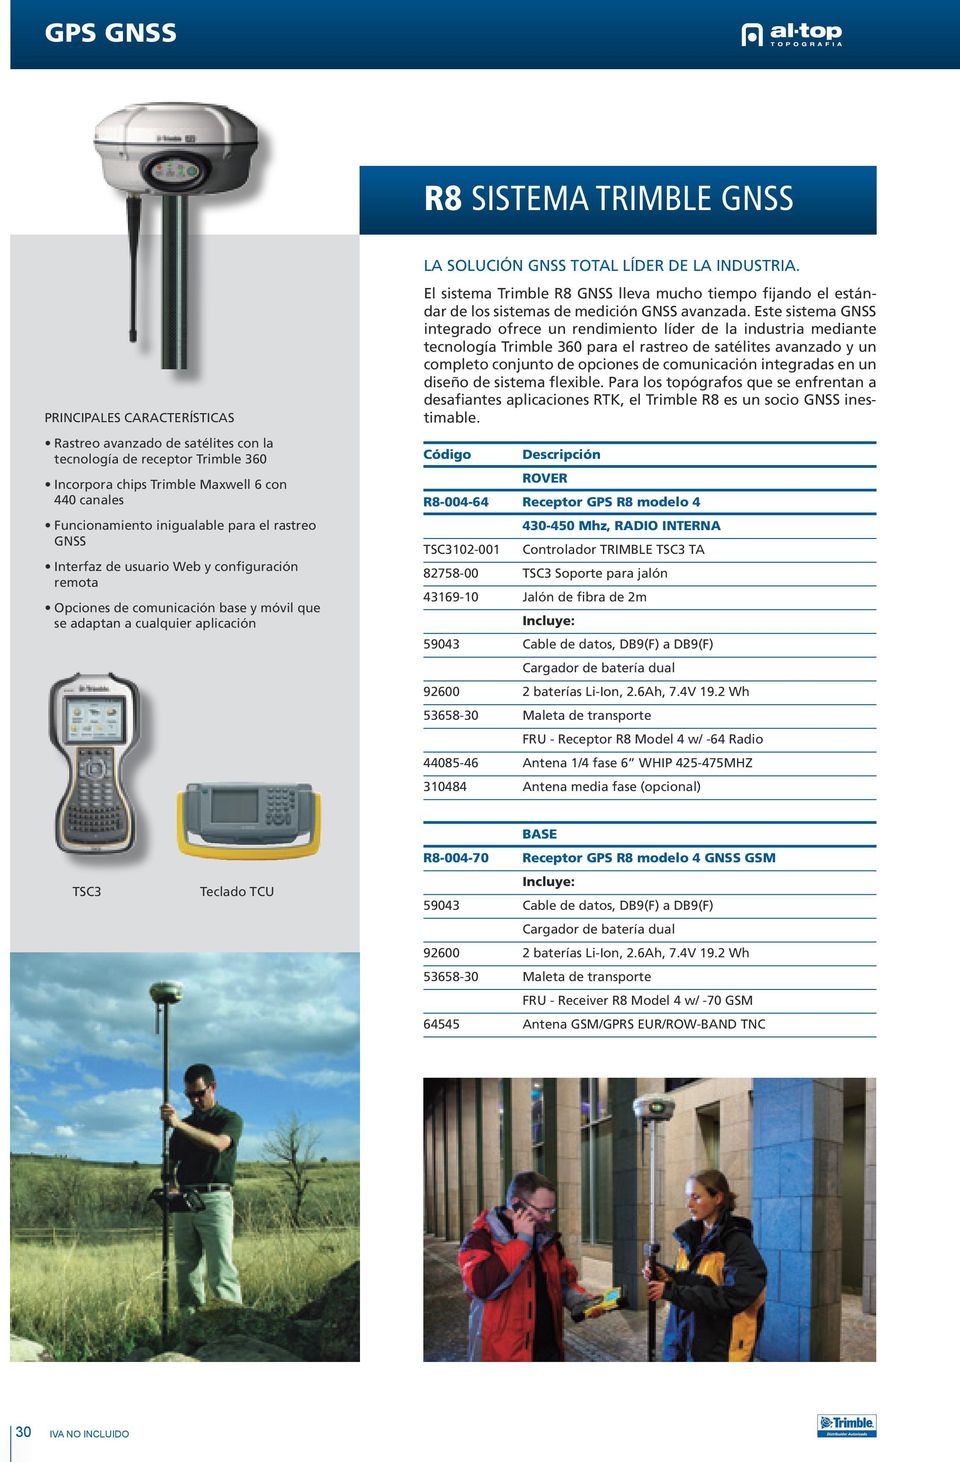 INDUSTRIA. El sistema Trimble R8 GNSS lleva mucho tiempo fijando el estándar de los sistemas de medición GNSS avanzada.